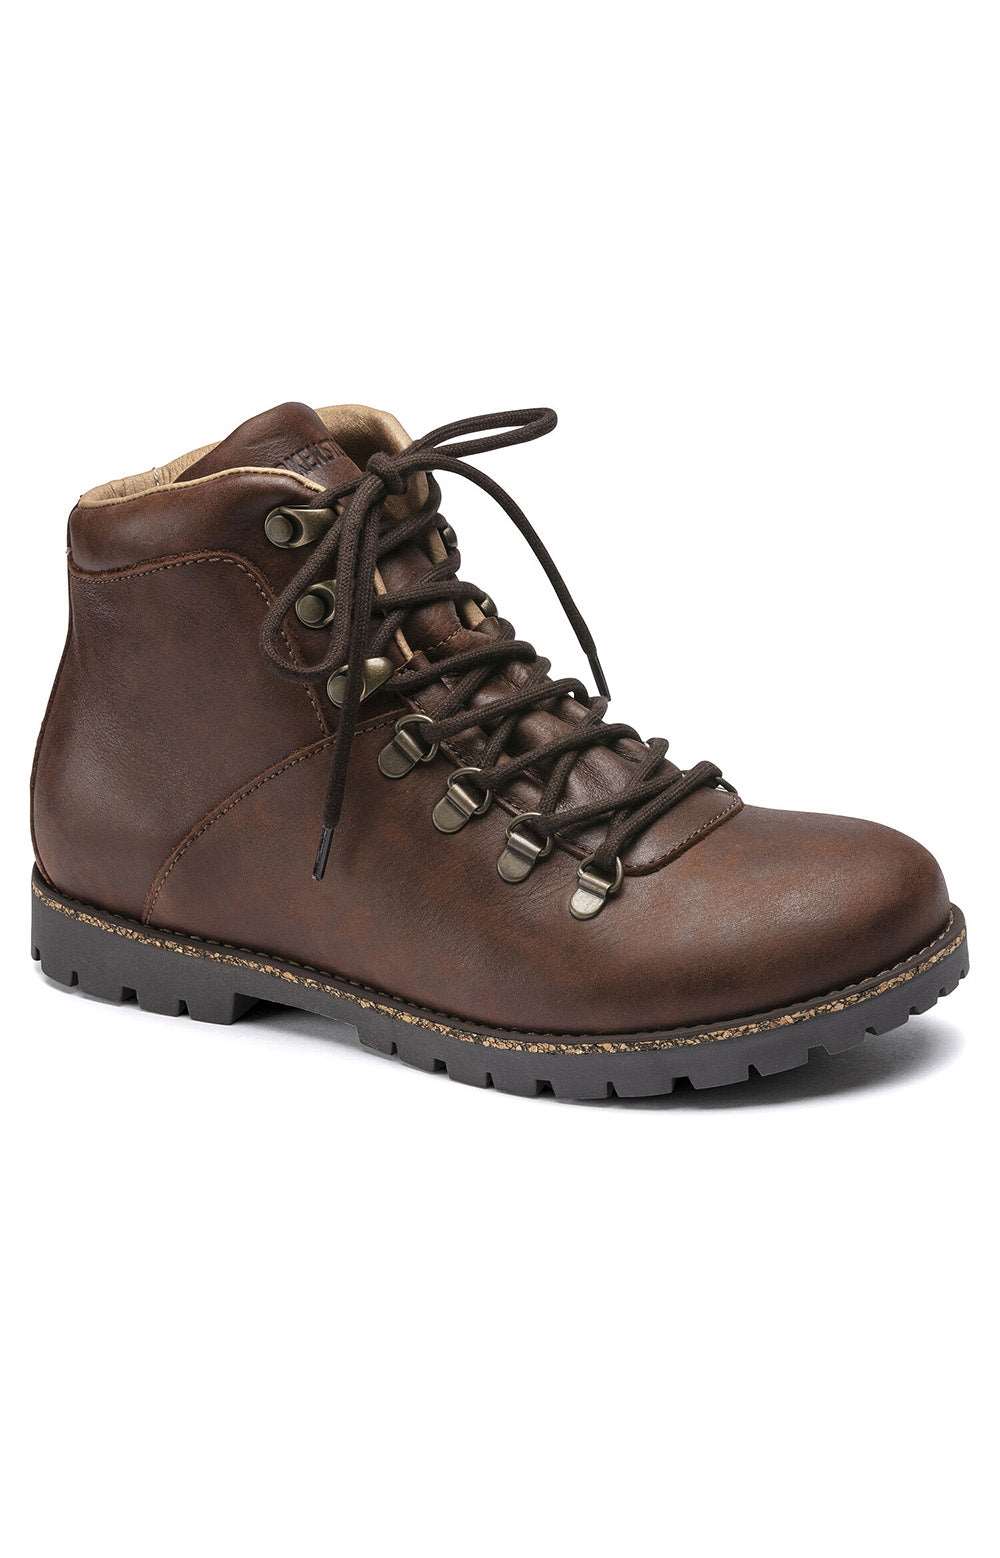 (1017327) Jackson Boots - Dark Brown